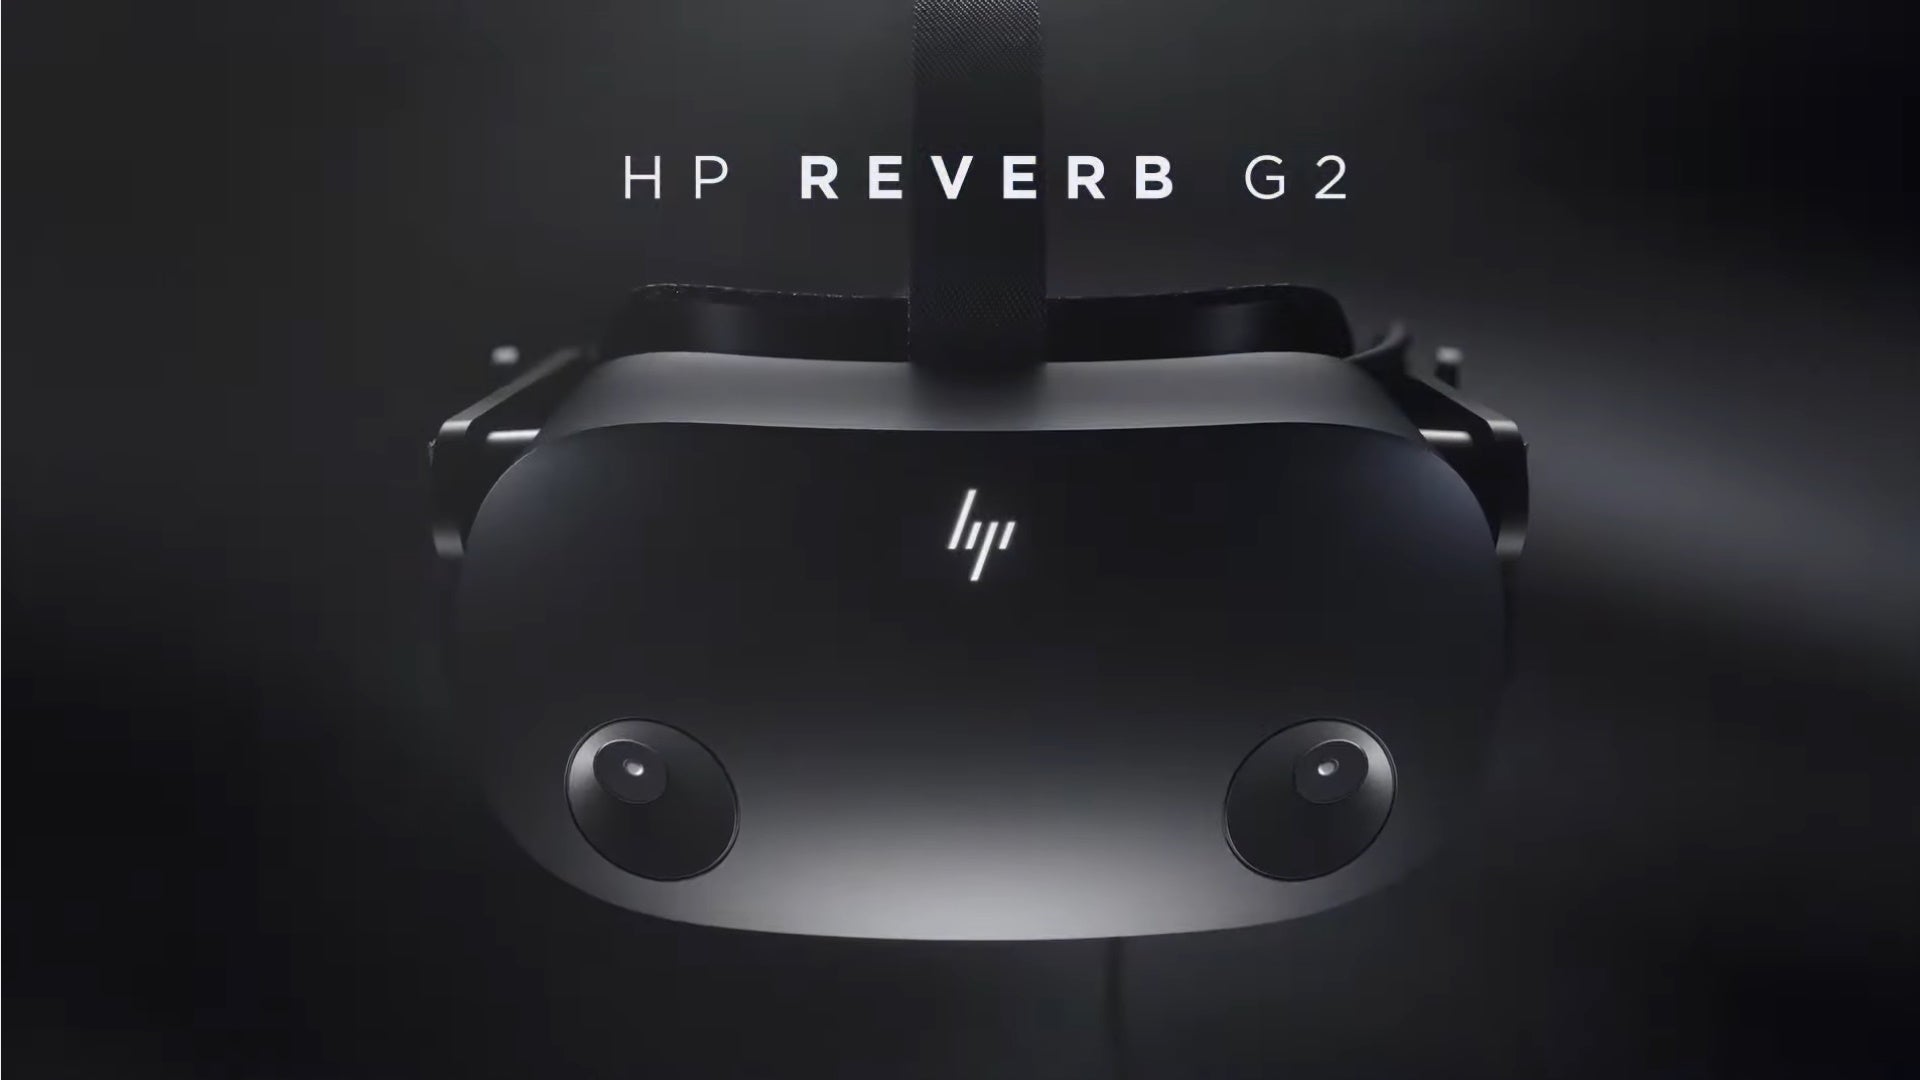 Obtenha o headset HP Reverb G2 VR por US $ 399 após um desconto de US $ 200